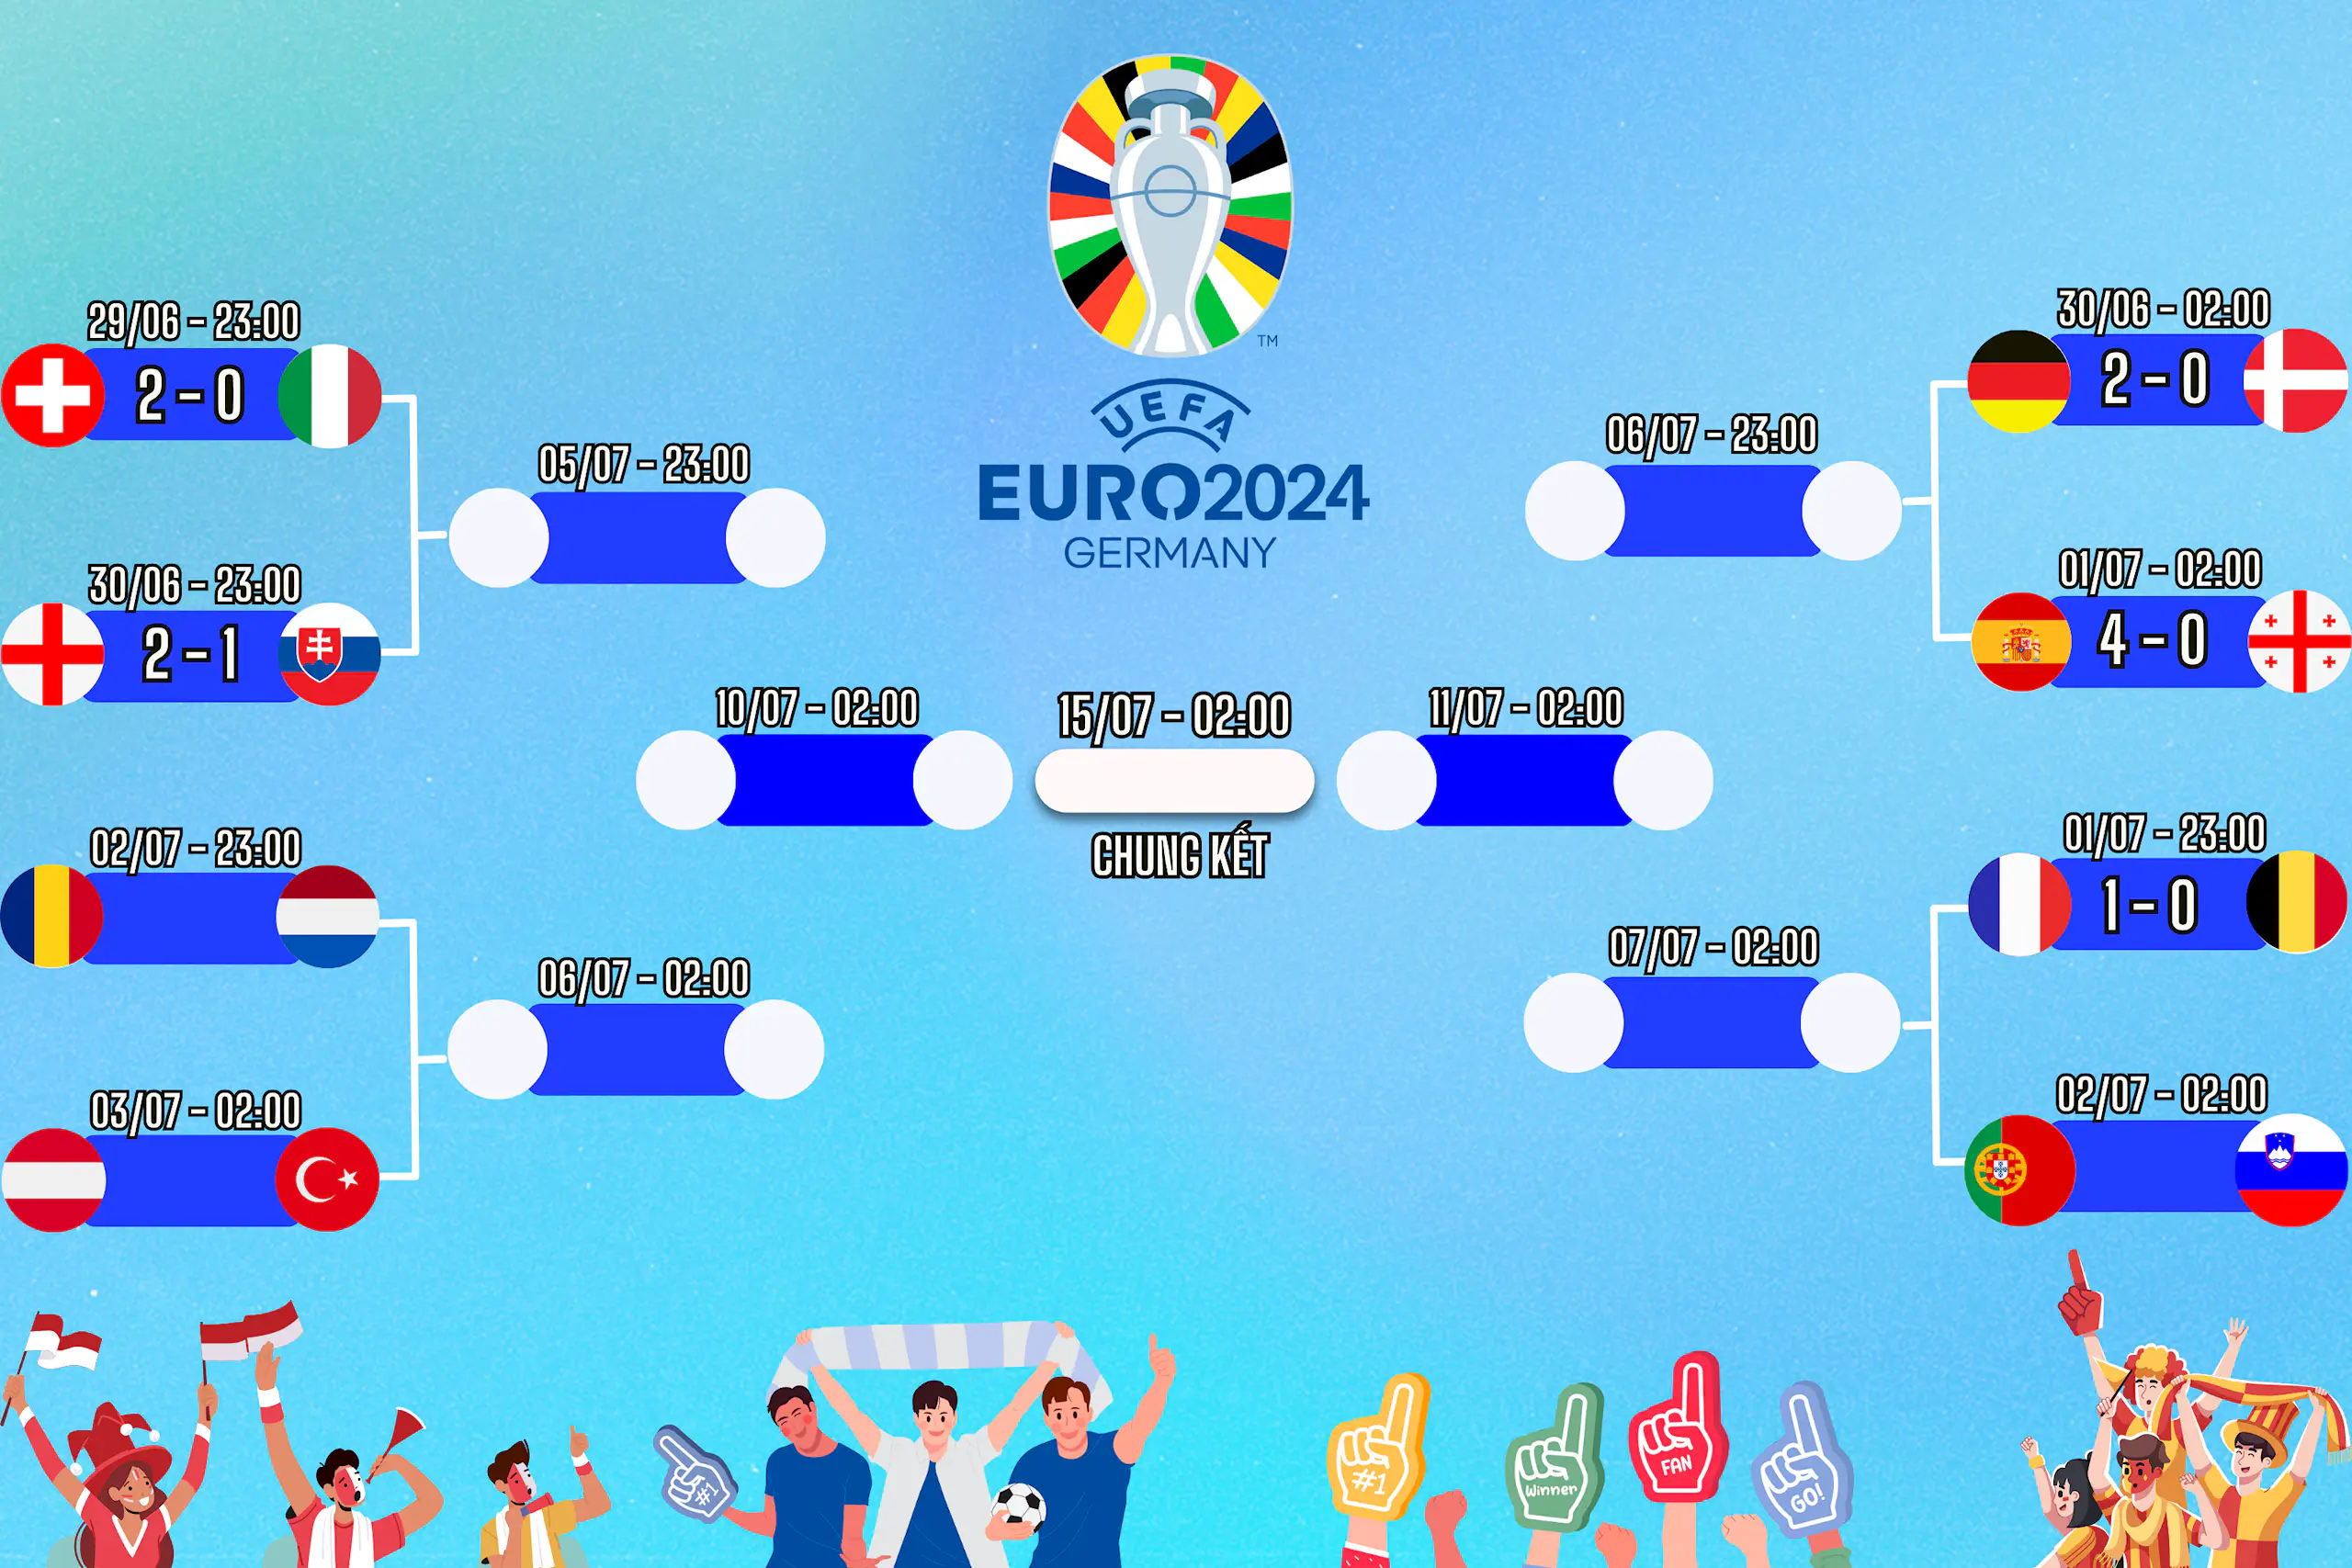 Lịch thi đấu vòng 1/8 EURO 2024 ngày 30/06, cập nhật kết quả và dự đoán tỉ số trận đấu cùng Congngheviet